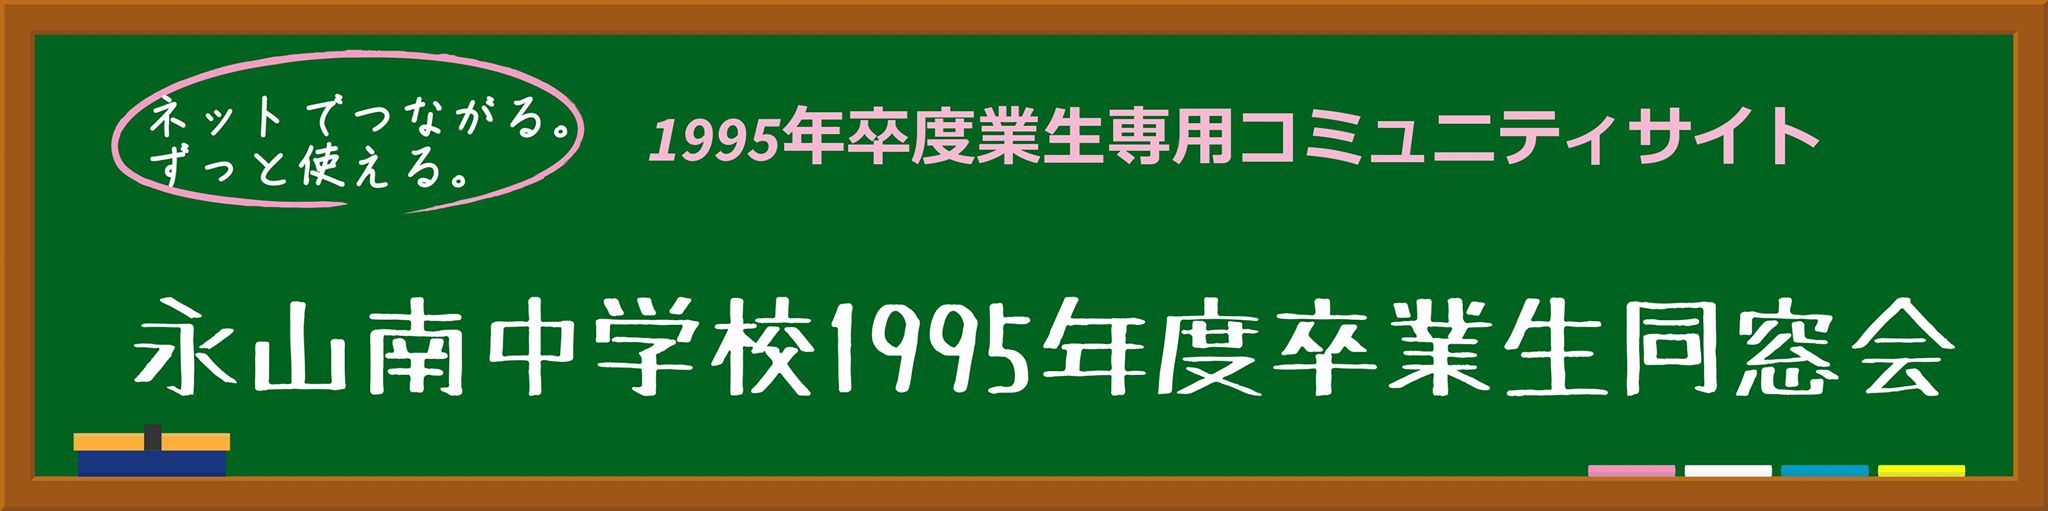 永南中学校1995年度卒業生同窓会